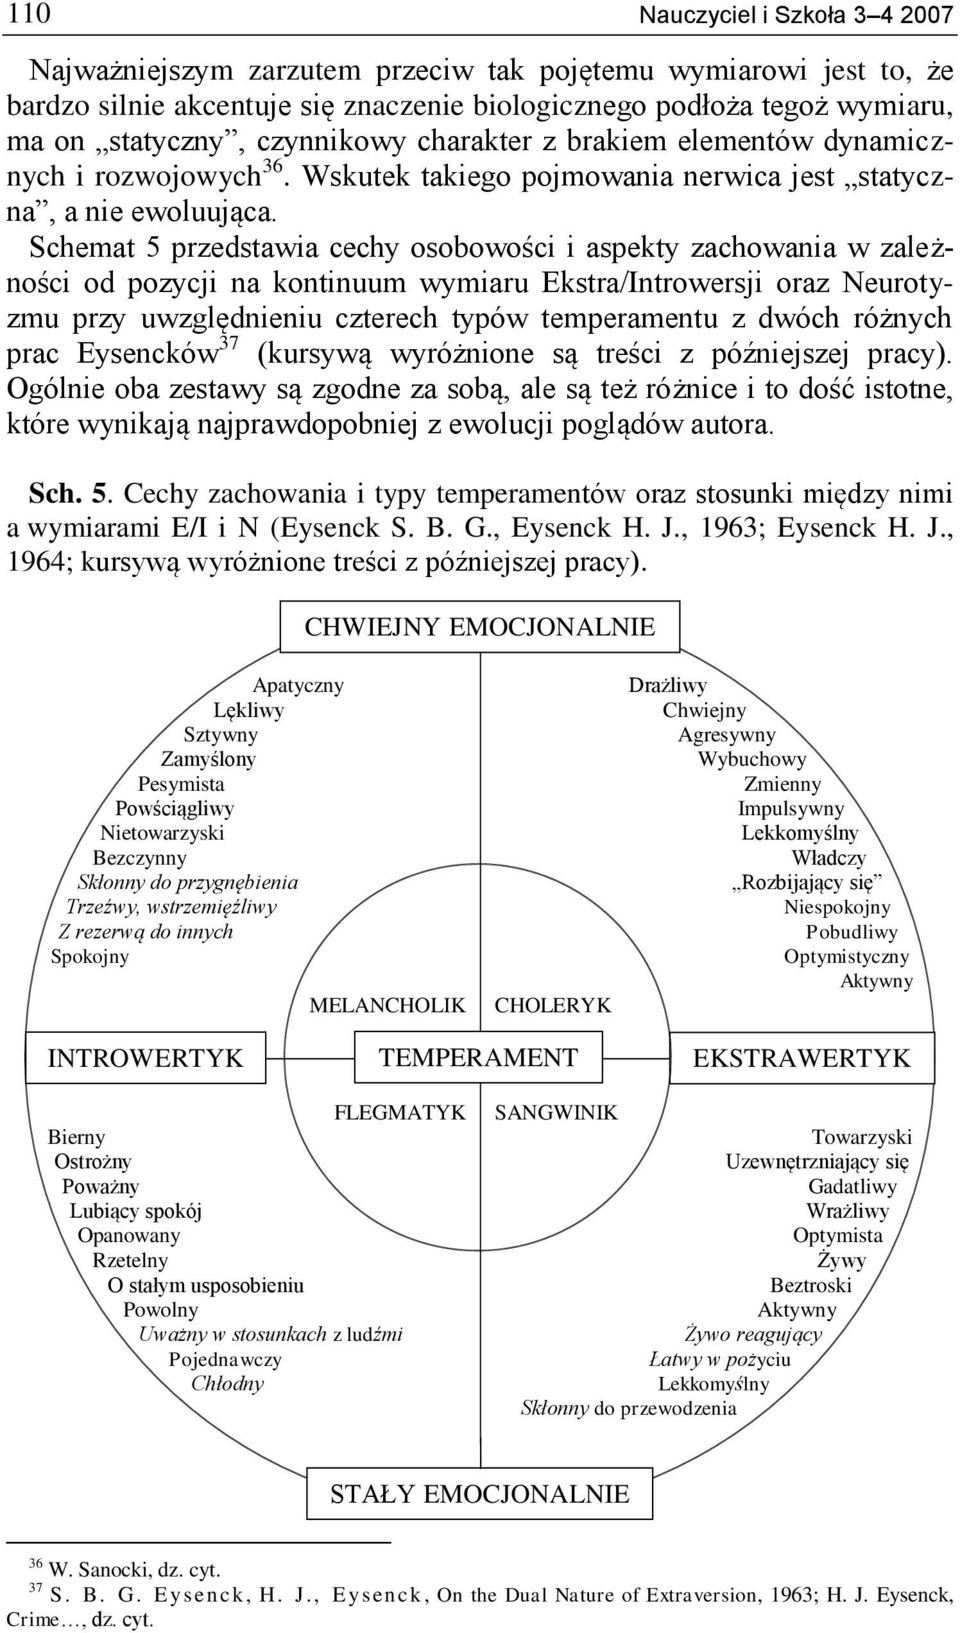 Schemat 5 przedstawia cechy osobowości i aspekty zachowania w zależności od pozycji na kontinuum wymiaru Ekstra/Introwersji oraz Neurotyzmu przy uwzględnieniu czterech typów temperamentu z dwóch